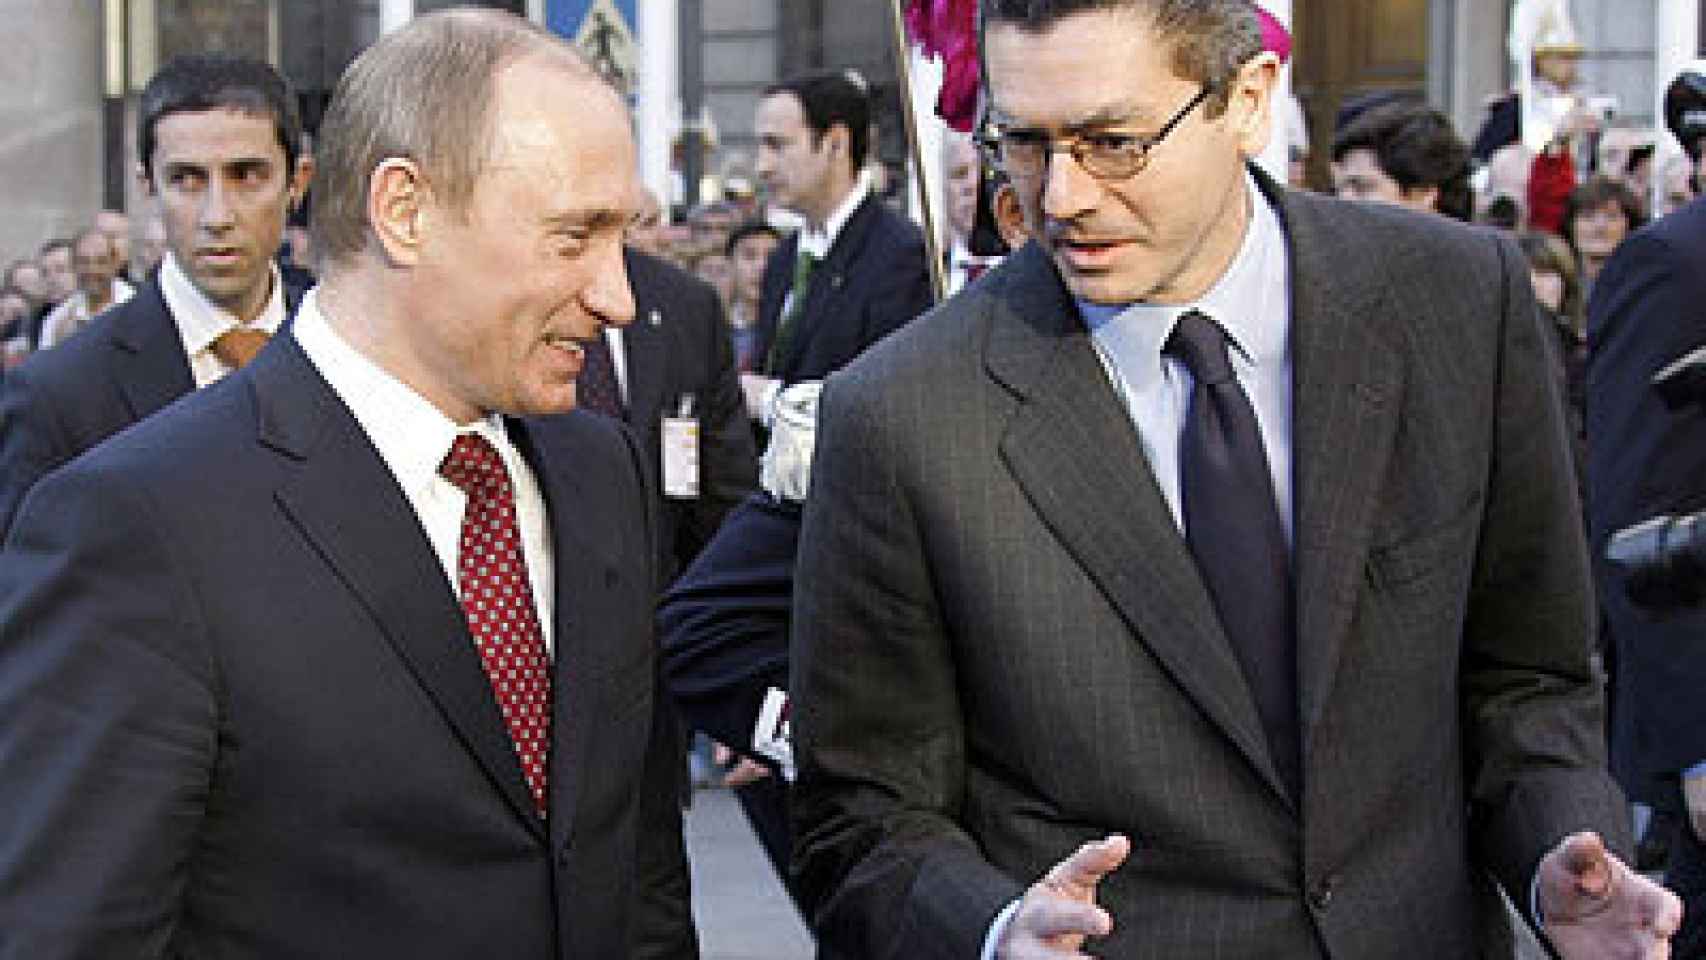 El ex alcalde de Madrid, Alberto Ruiz-Gallardón, recibe al presidente de Rusia, Vladimir Putin, en el acto en el que se le hizo entrega de la Llave de Oro de la capital.